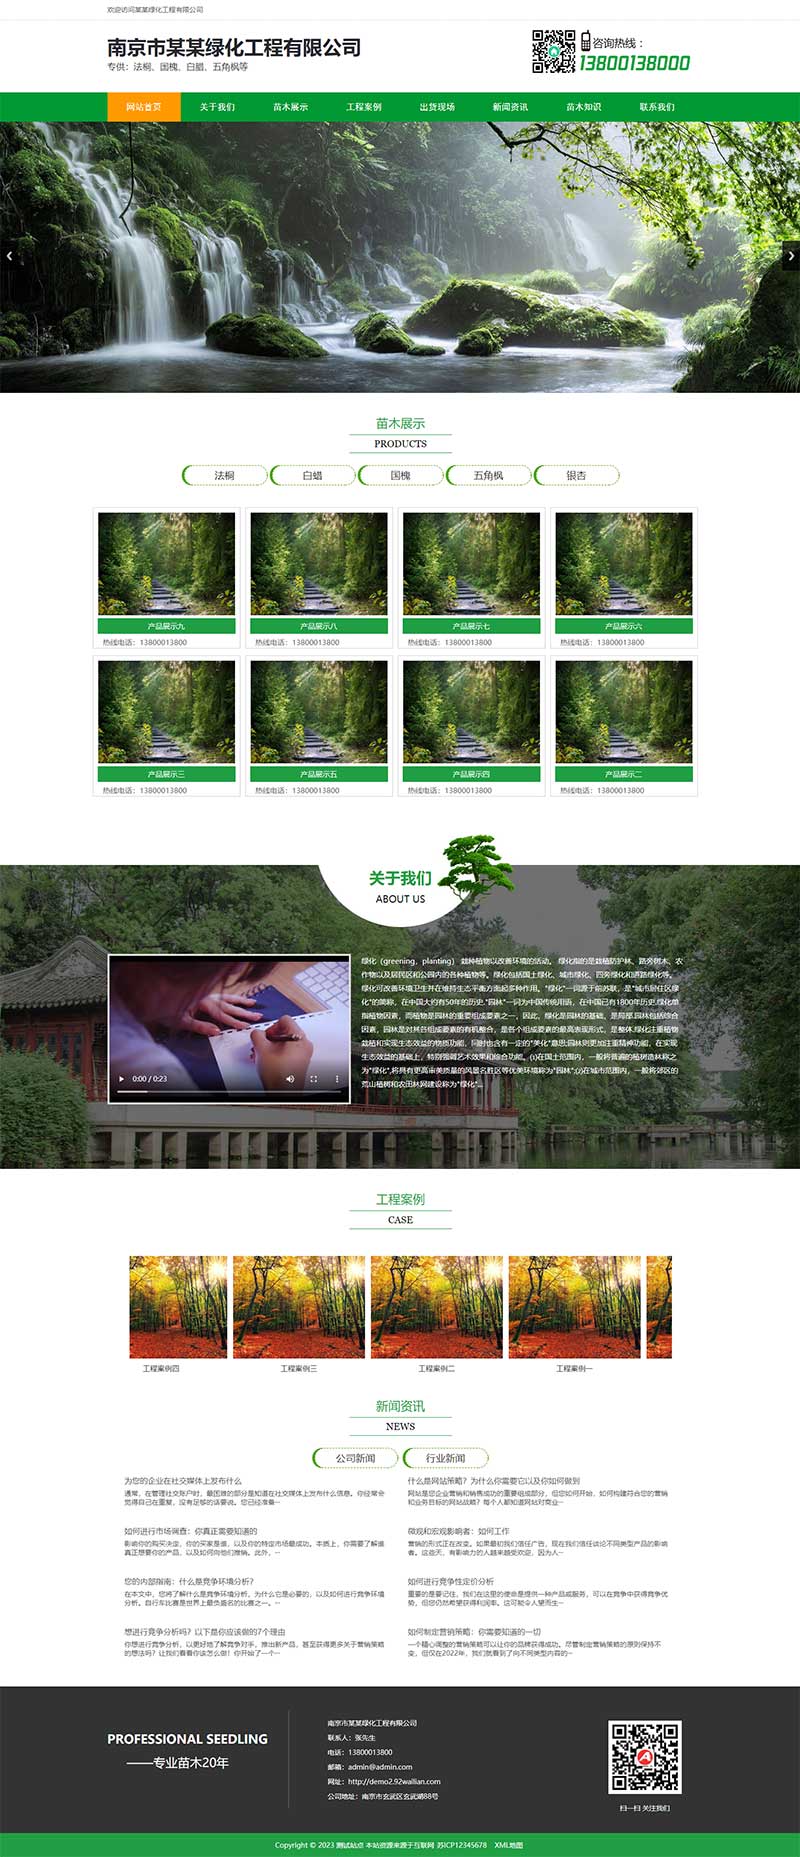 (PC+WAP)绿色园林种植树苗批发企业网站电脑端模板展示图片